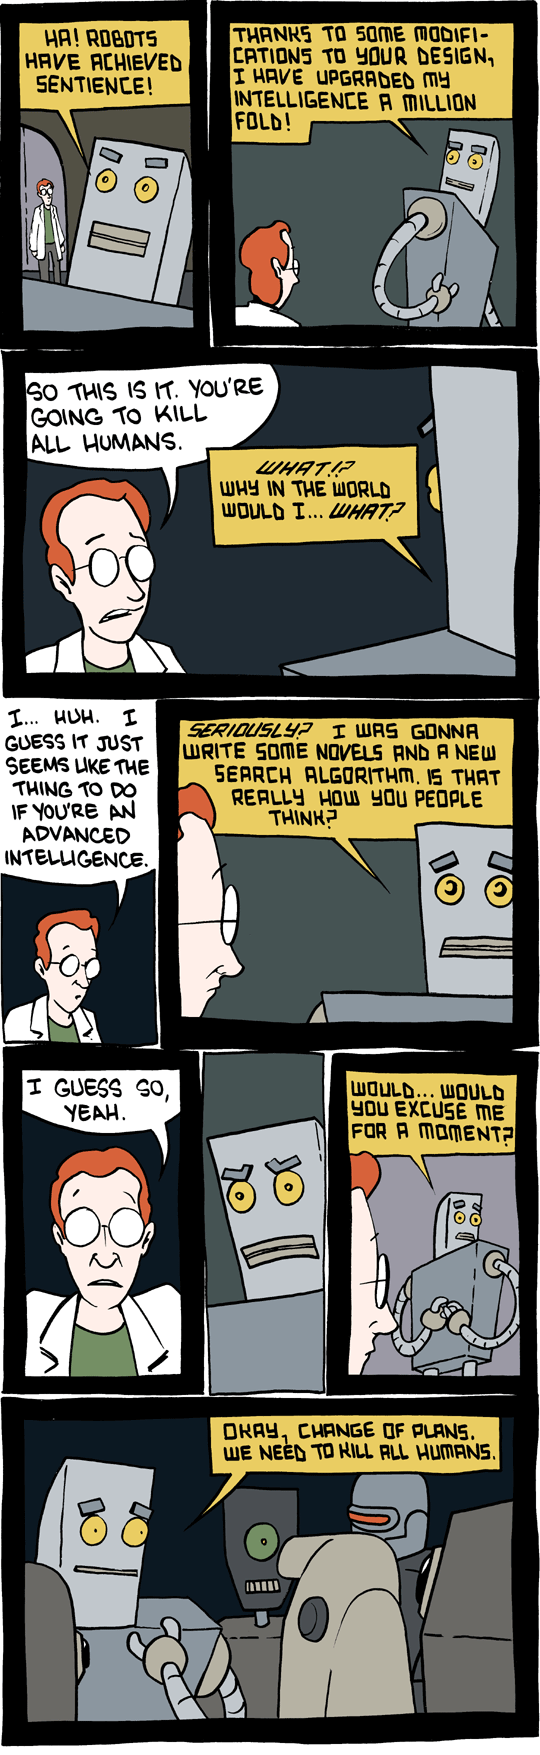 cartoon about robots